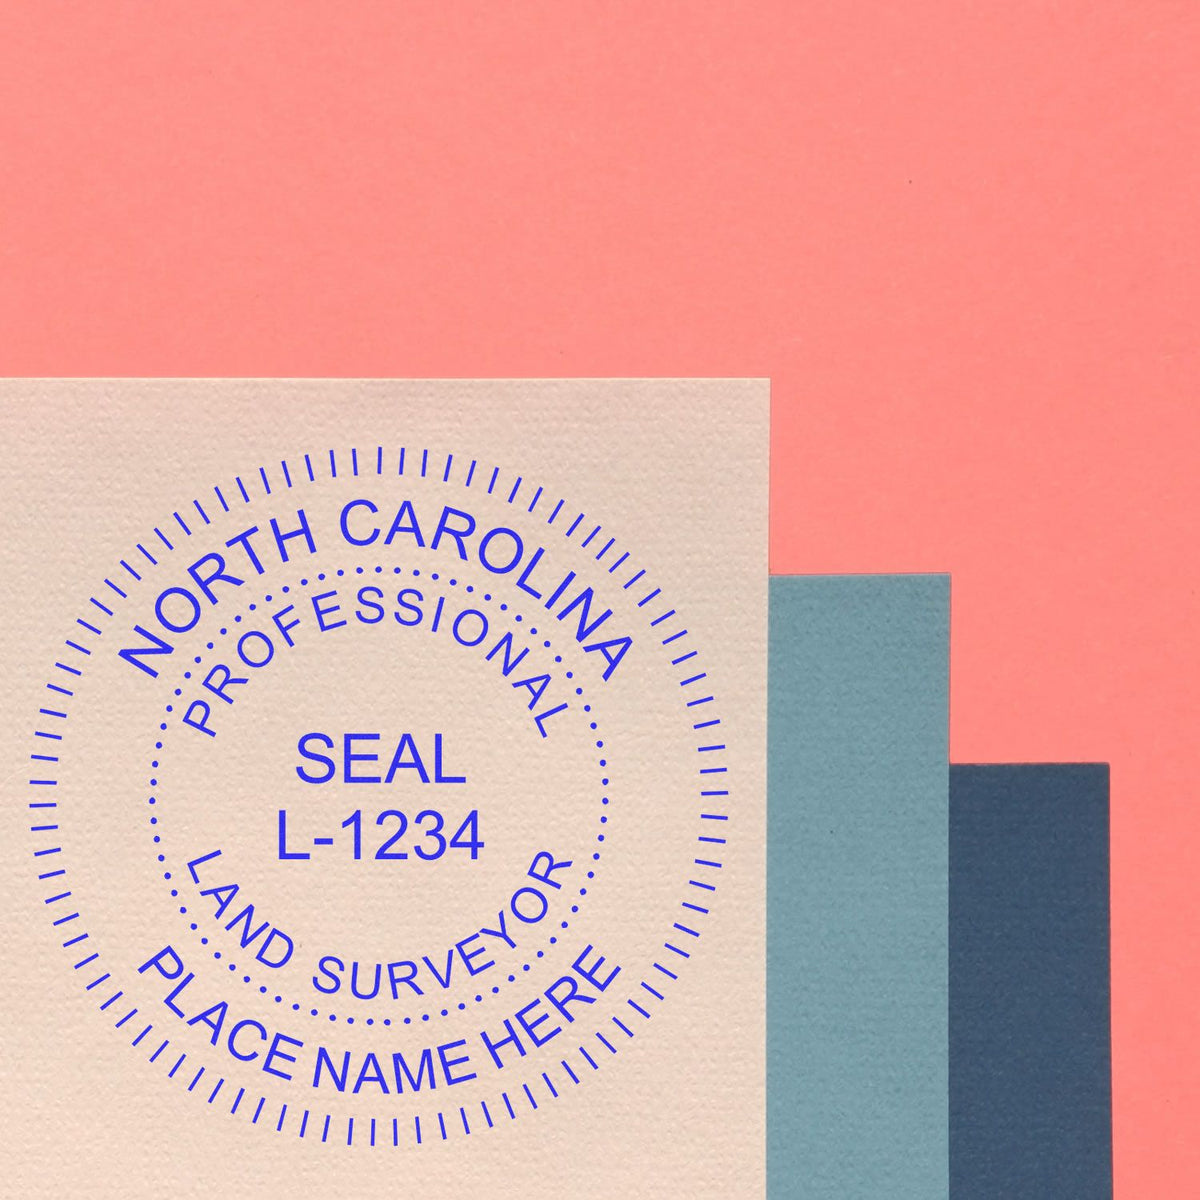 North Carolina Land Surveyor Seal Stamp In Use Photo